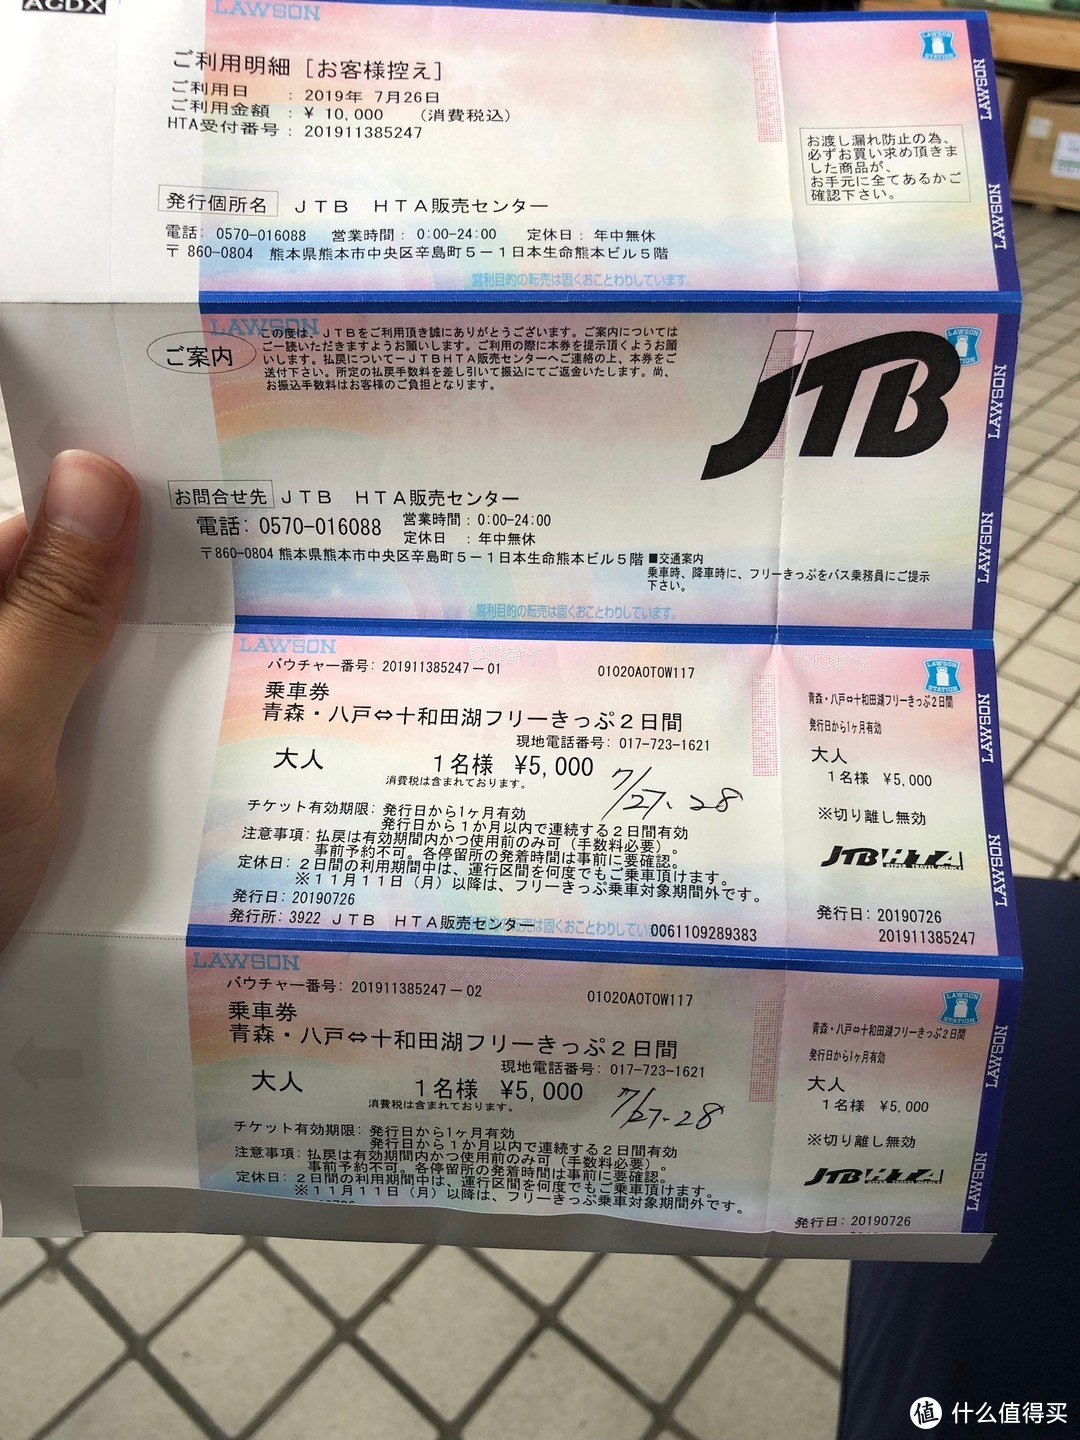 5000日元可以用两天的bus通票